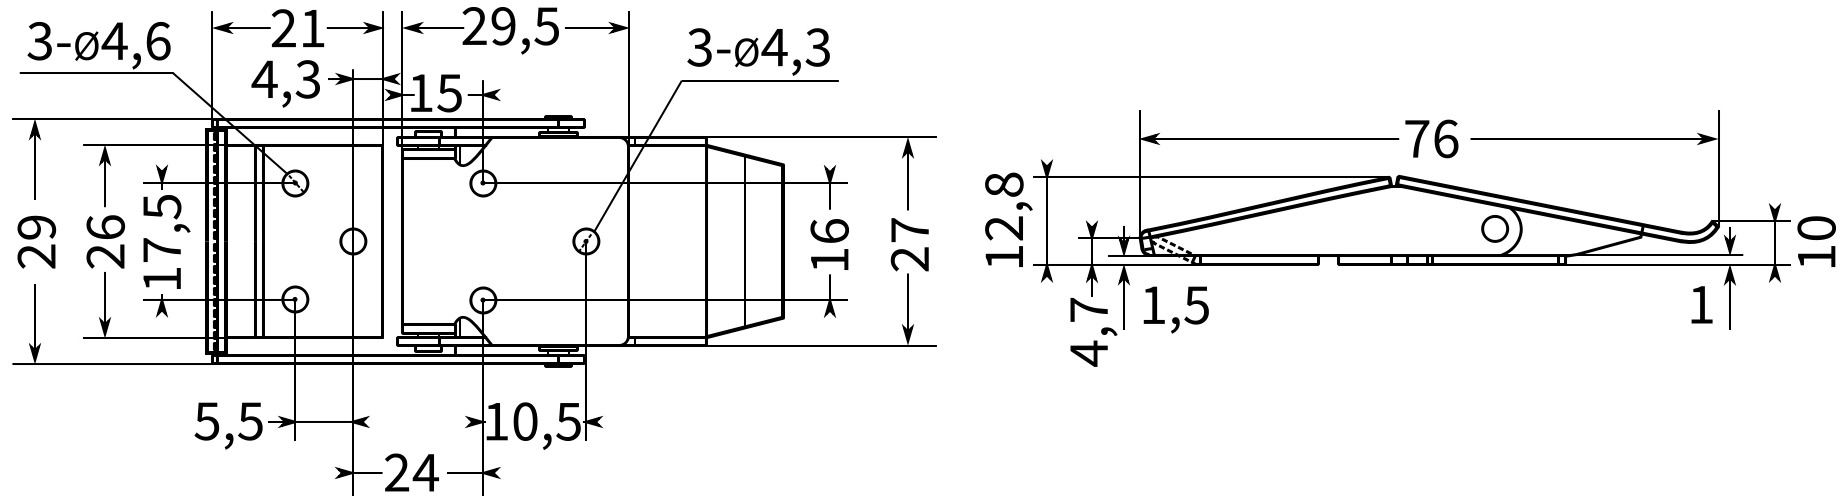 Замок-защелка накладной L=76 B39C-2 - размеры, схема